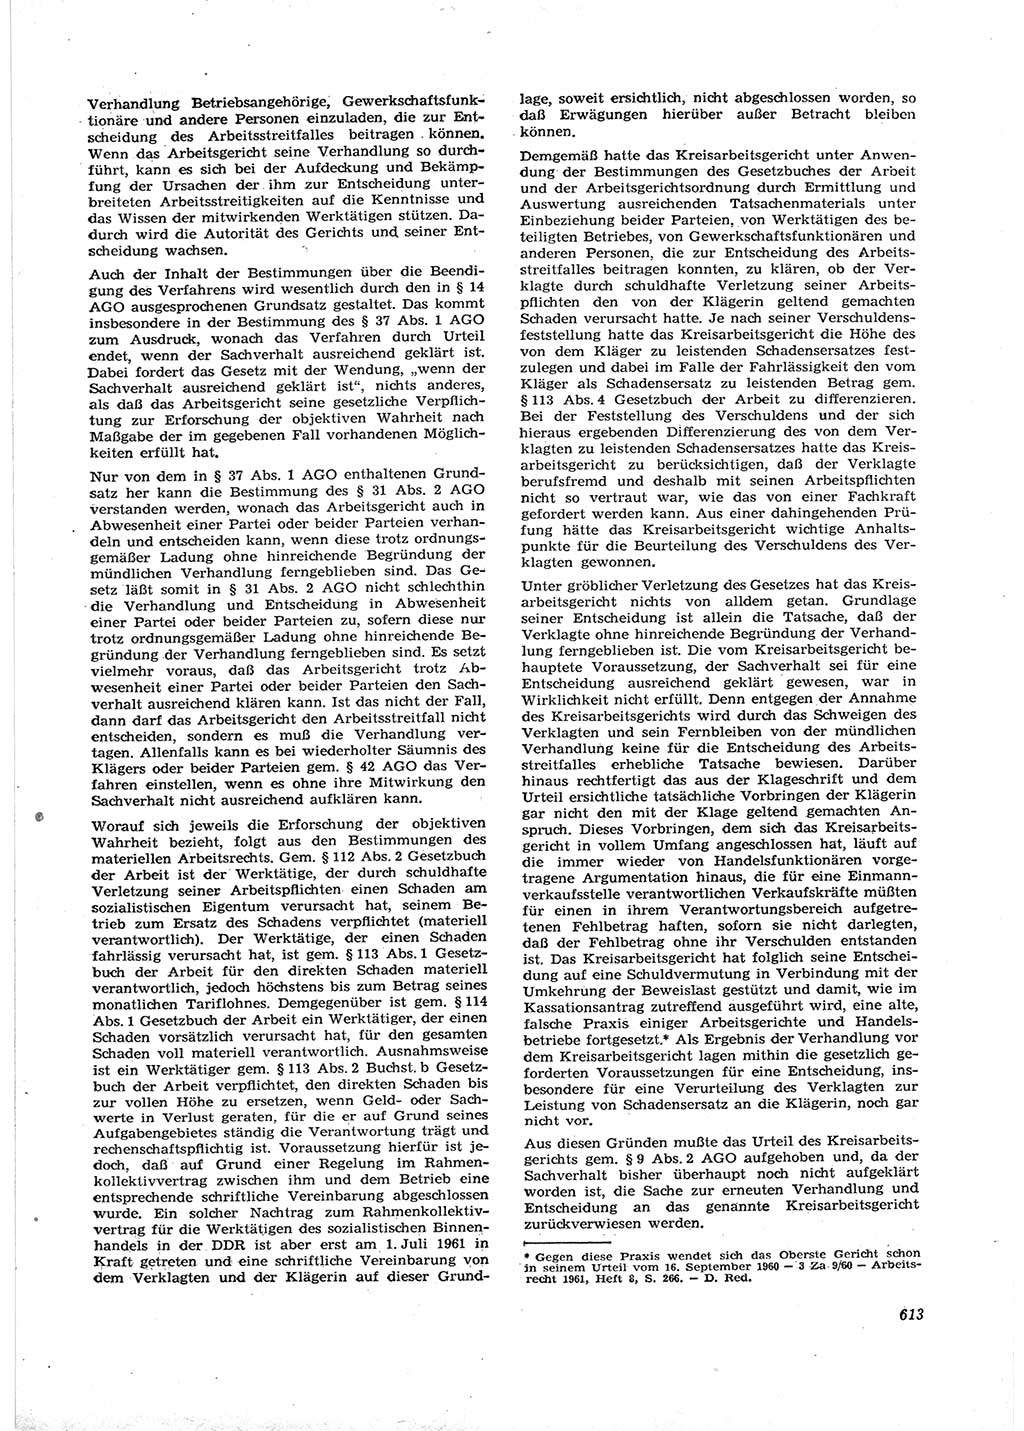 Neue Justiz (NJ), Zeitschrift für Recht und Rechtswissenschaft [Deutsche Demokratische Republik (DDR)], 16. Jahrgang 1962, Seite 613 (NJ DDR 1962, S. 613)